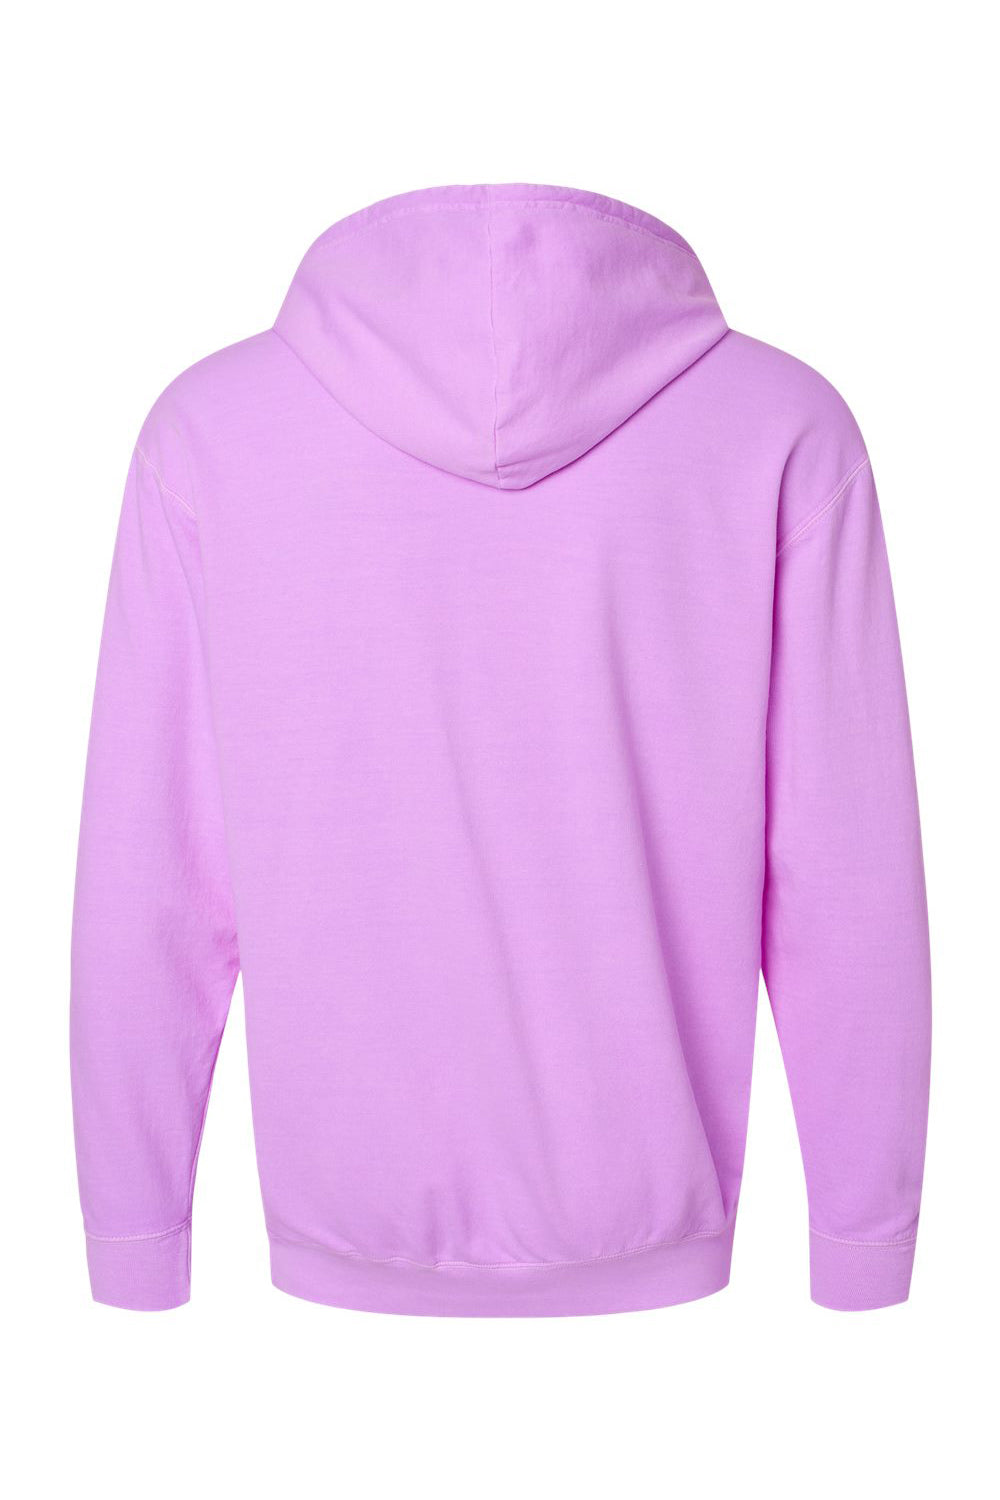 Comfort Colors 1467 Mens Garment Dyed Fleece Hooded Sweatshirt Hoodie Neon Violet Purple Flat Back